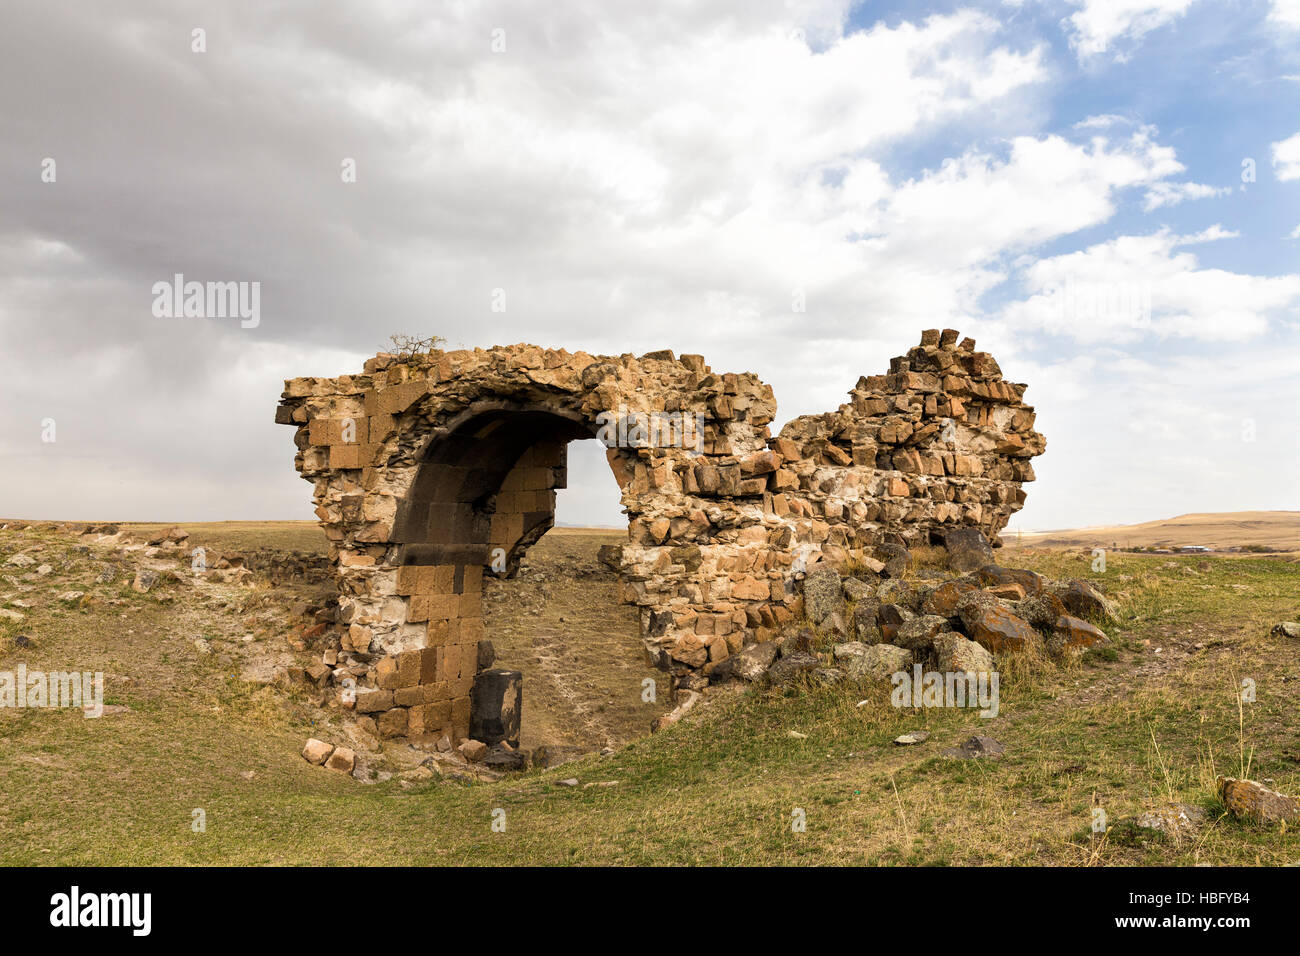 Las ruinas de Ani. Ani es una ciudad medieval armenio en ruinas situada en la provincia turca de Kars. Foto de stock